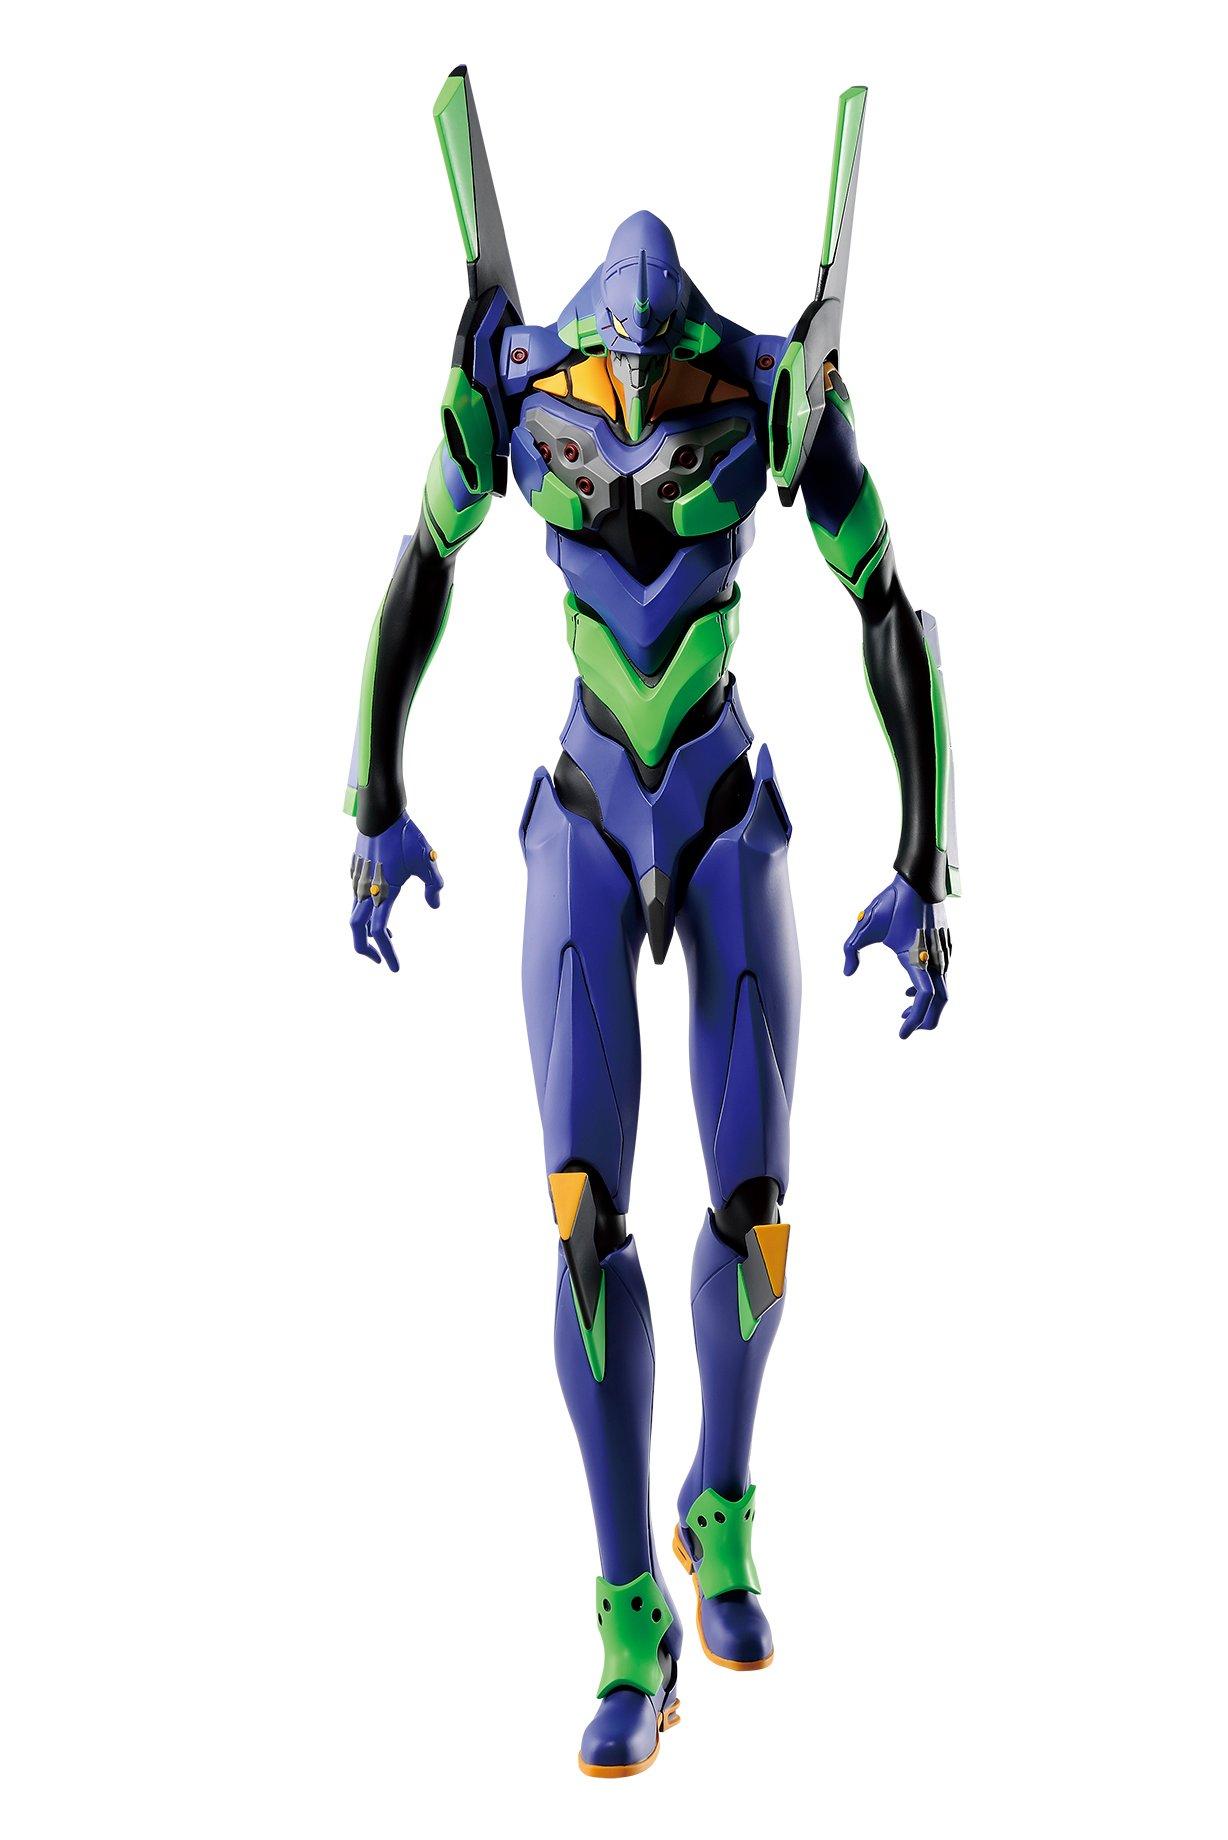 Neon Genesis Evangelion Eva 01 Test Type Evangelion 3 0 Plus 1 0 Ichiban Statue Gamestop